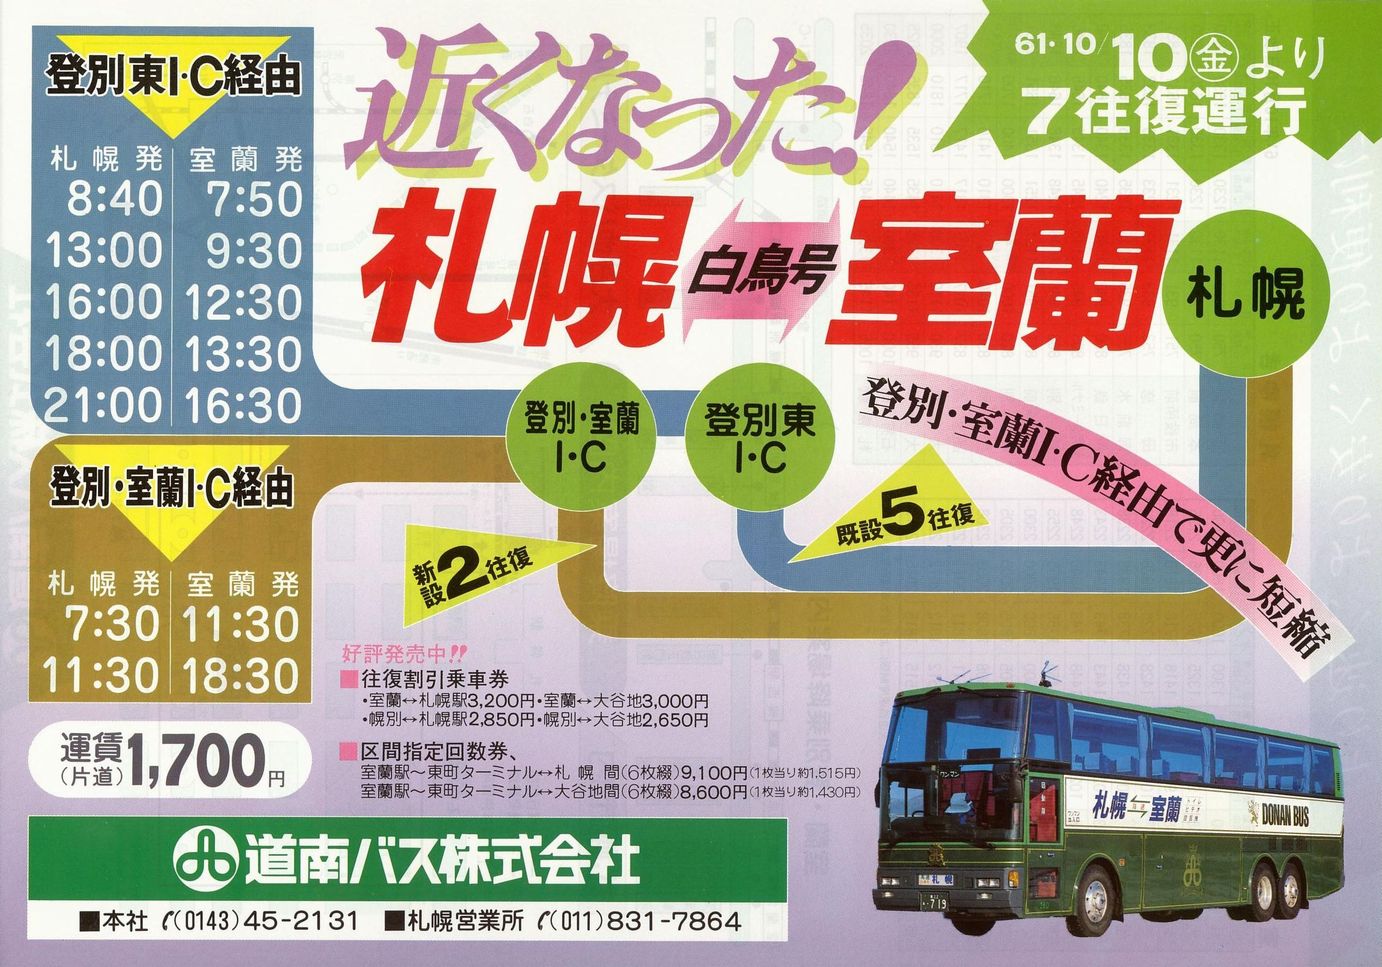 1986-10-10改正_道南バス_高速白鳥号チラシ表面